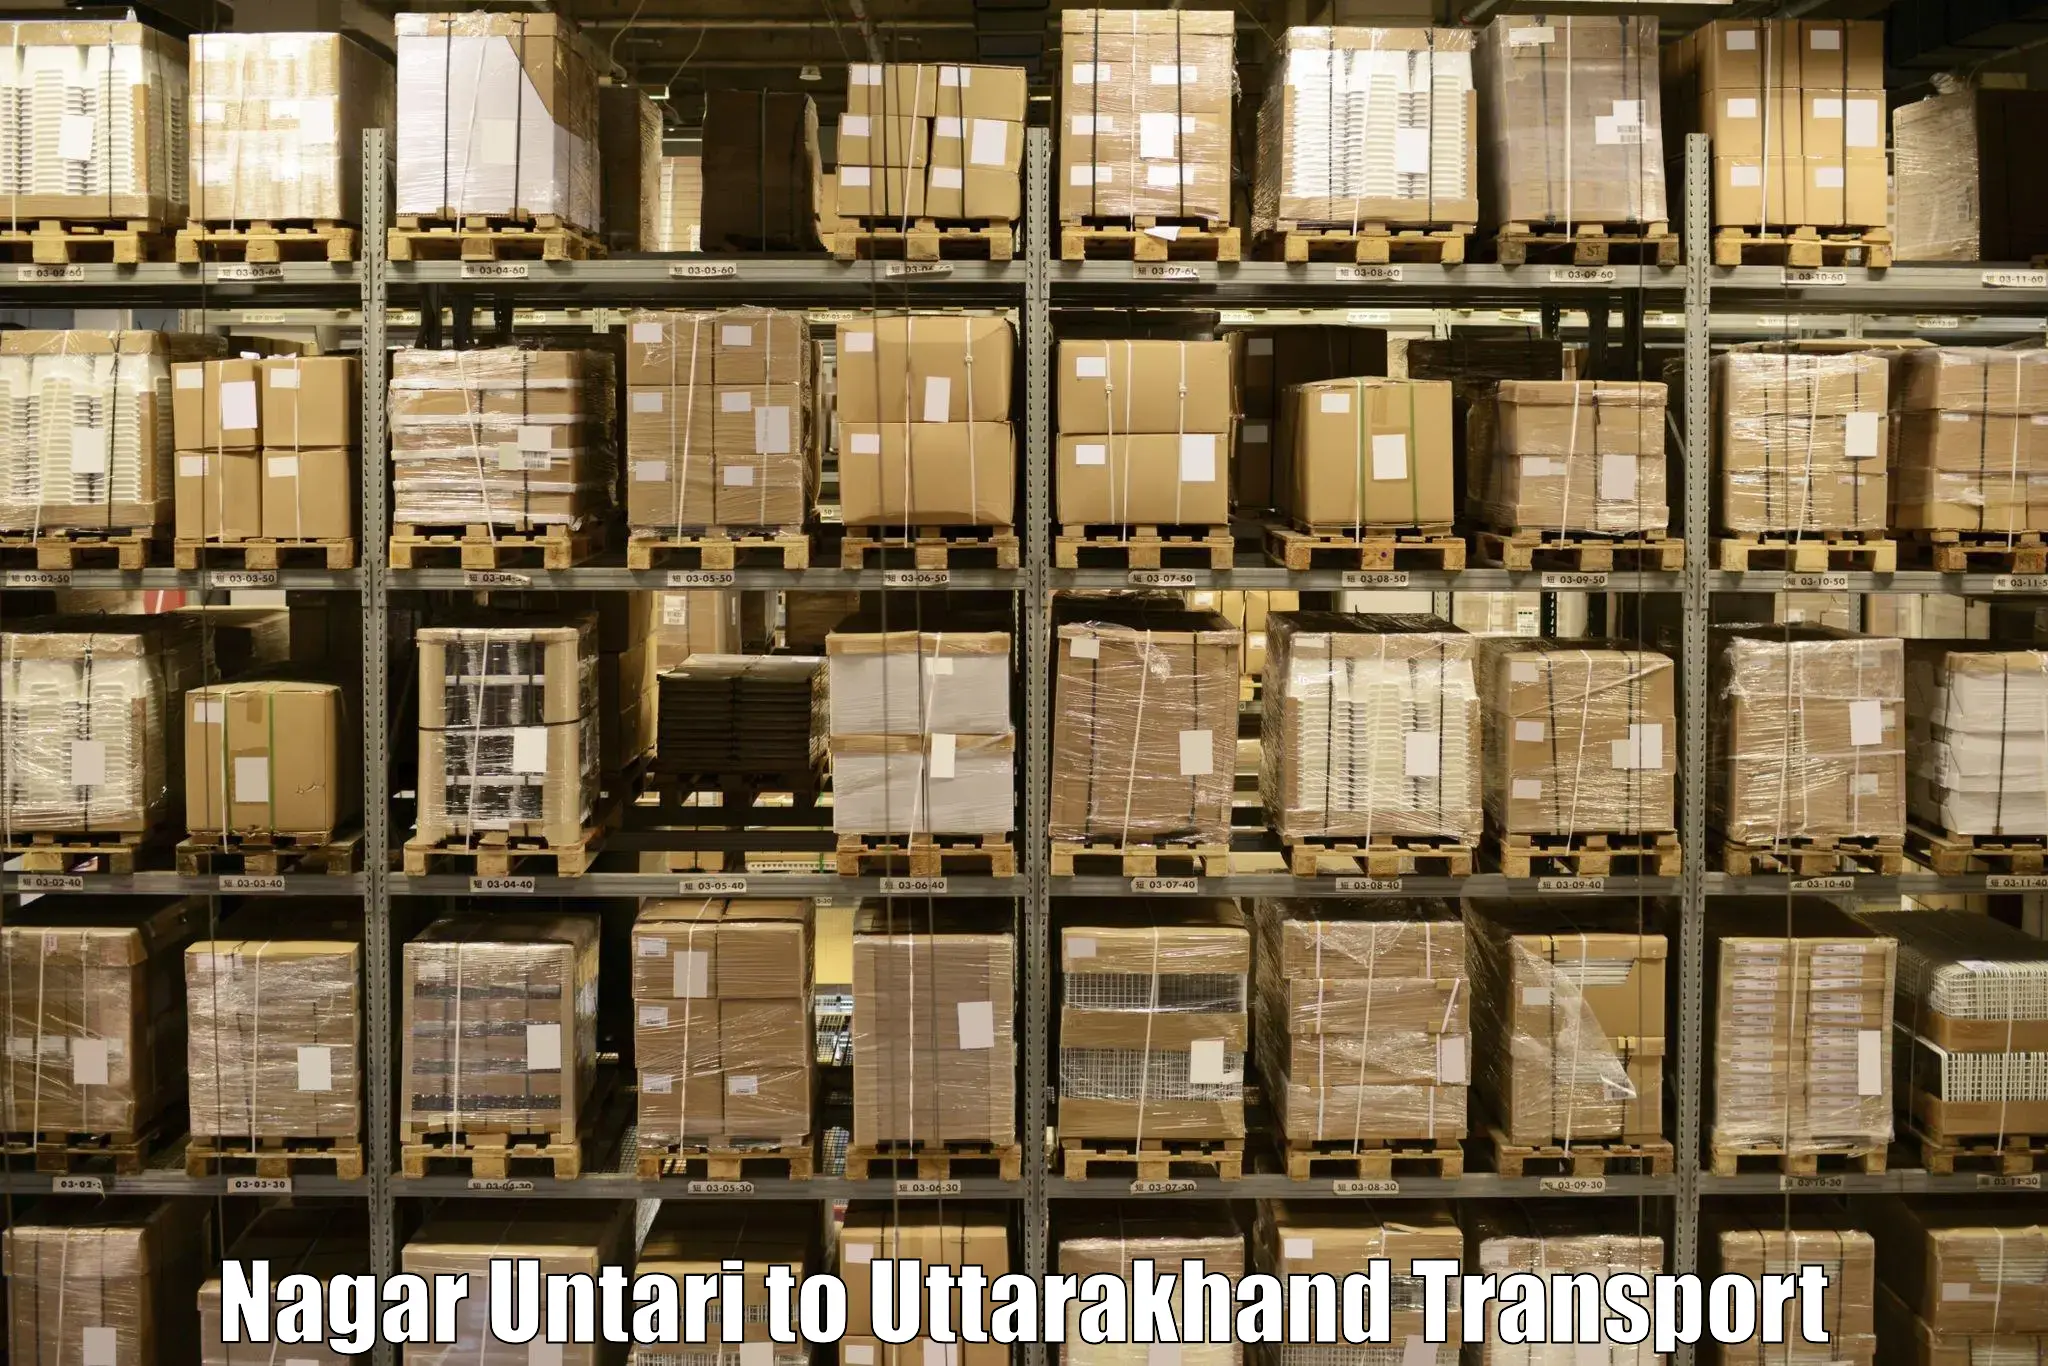 Container transport service Nagar Untari to IIT Roorkee